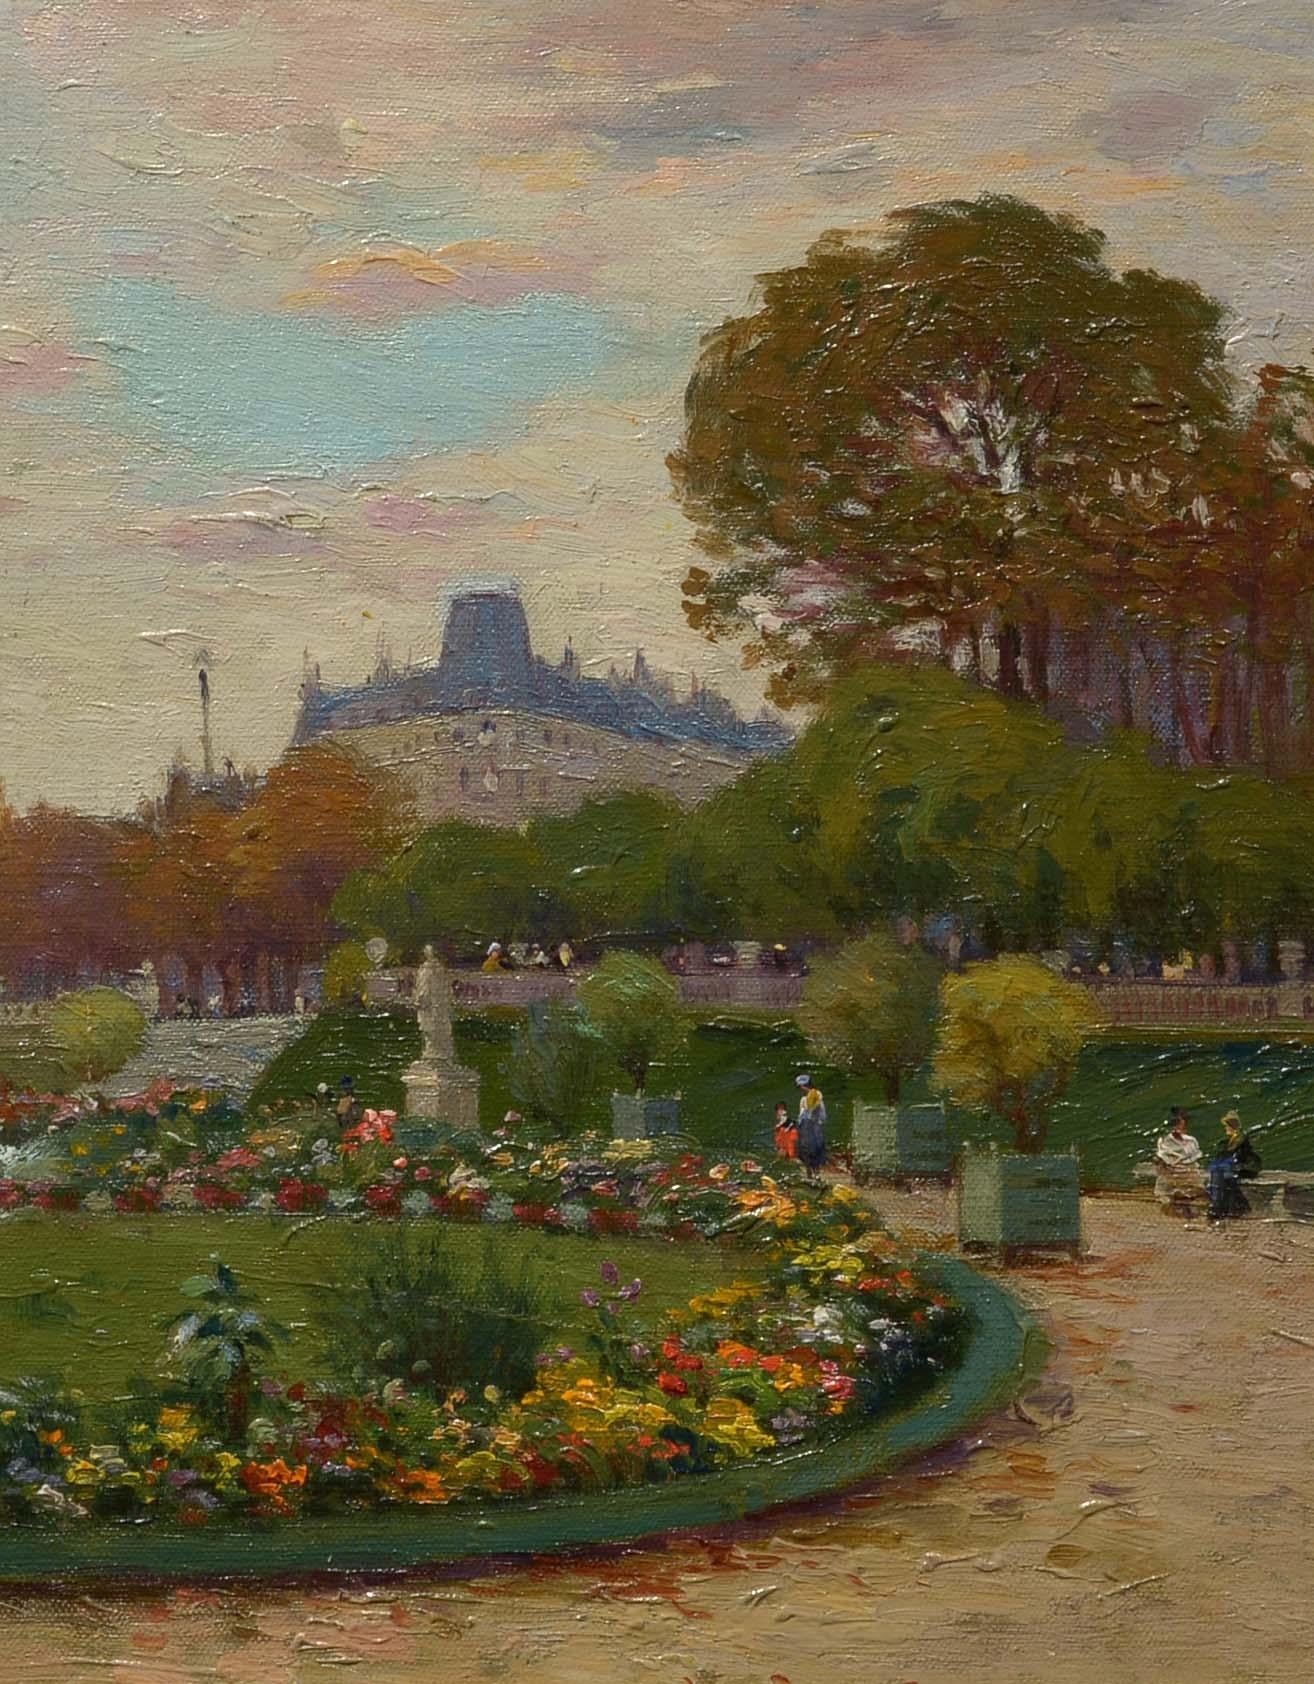 Jardin du Luxembourg, Paris, France, attribué à Alice Maud Fanner, Gardens